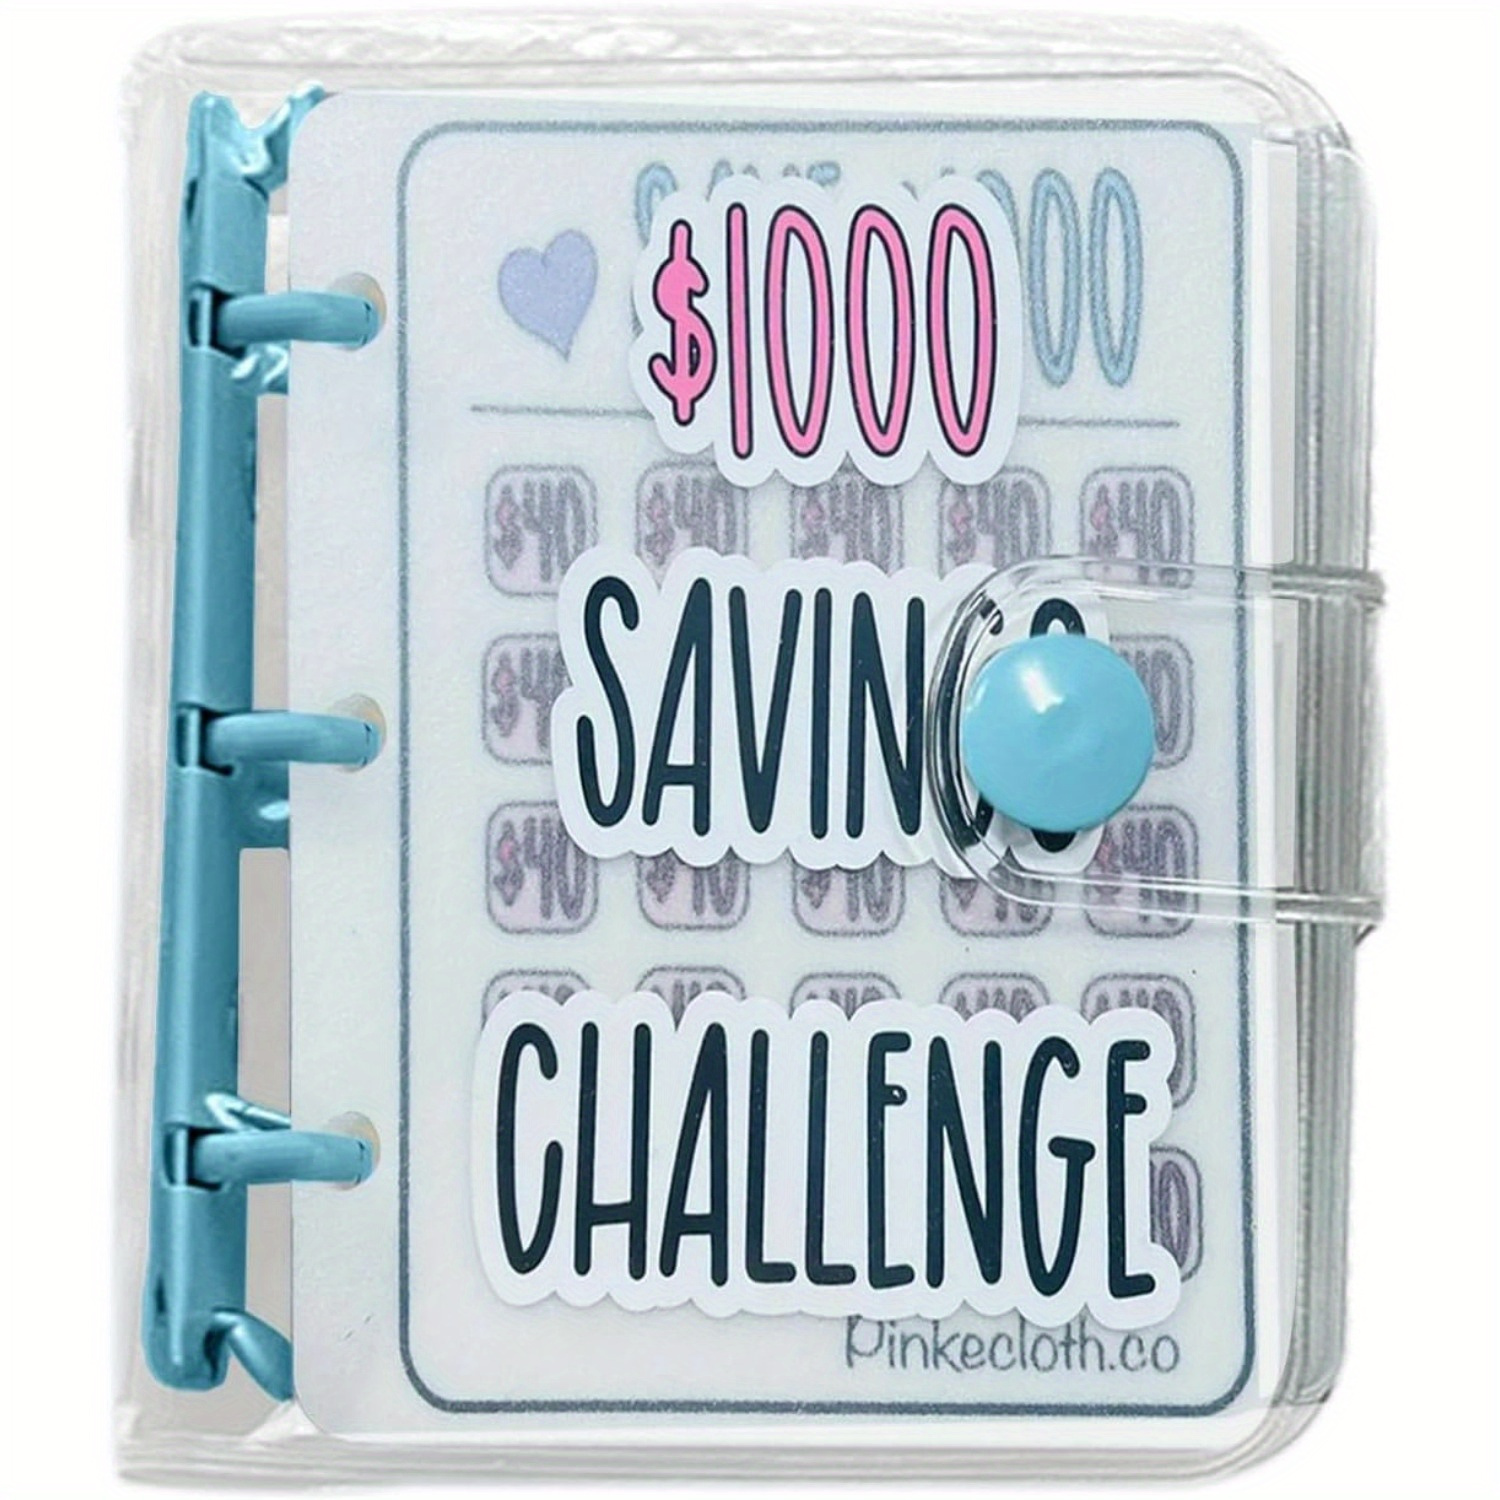 Carpeta de Desafio de 100 Sobres, Carpeta de Ahorro de Dinero Libro de  Desafíos de Ahorro de 100 Días con Pegatinas de Números de Sobres para  Planificar Presupuestos y Ahorrar Dinero 